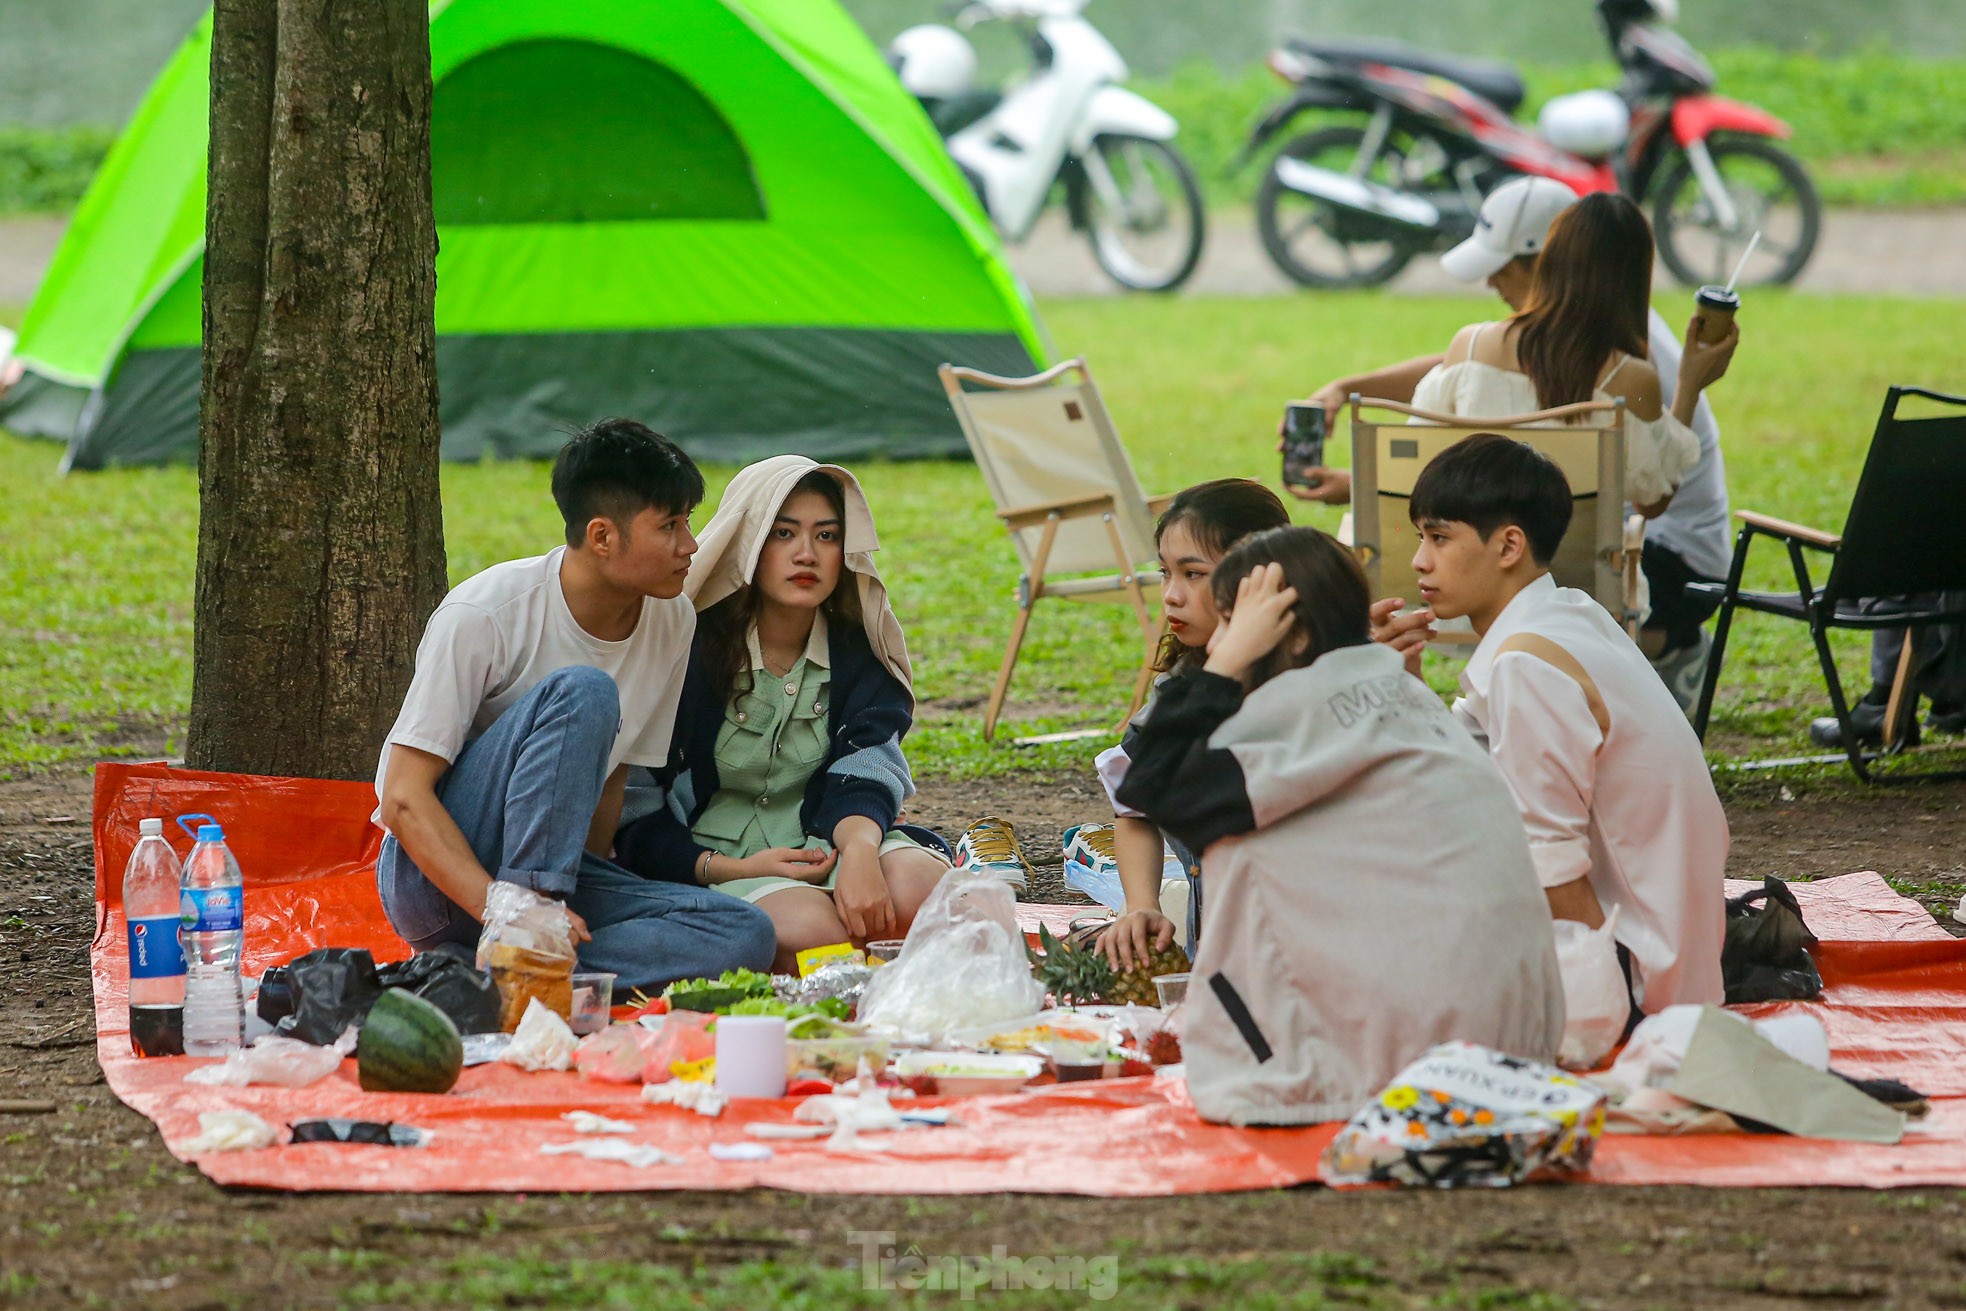 Hàng nghìn người đổ về công viên Yên Sở cắm trại trong ngày nghỉ lễ - Ảnh 14.